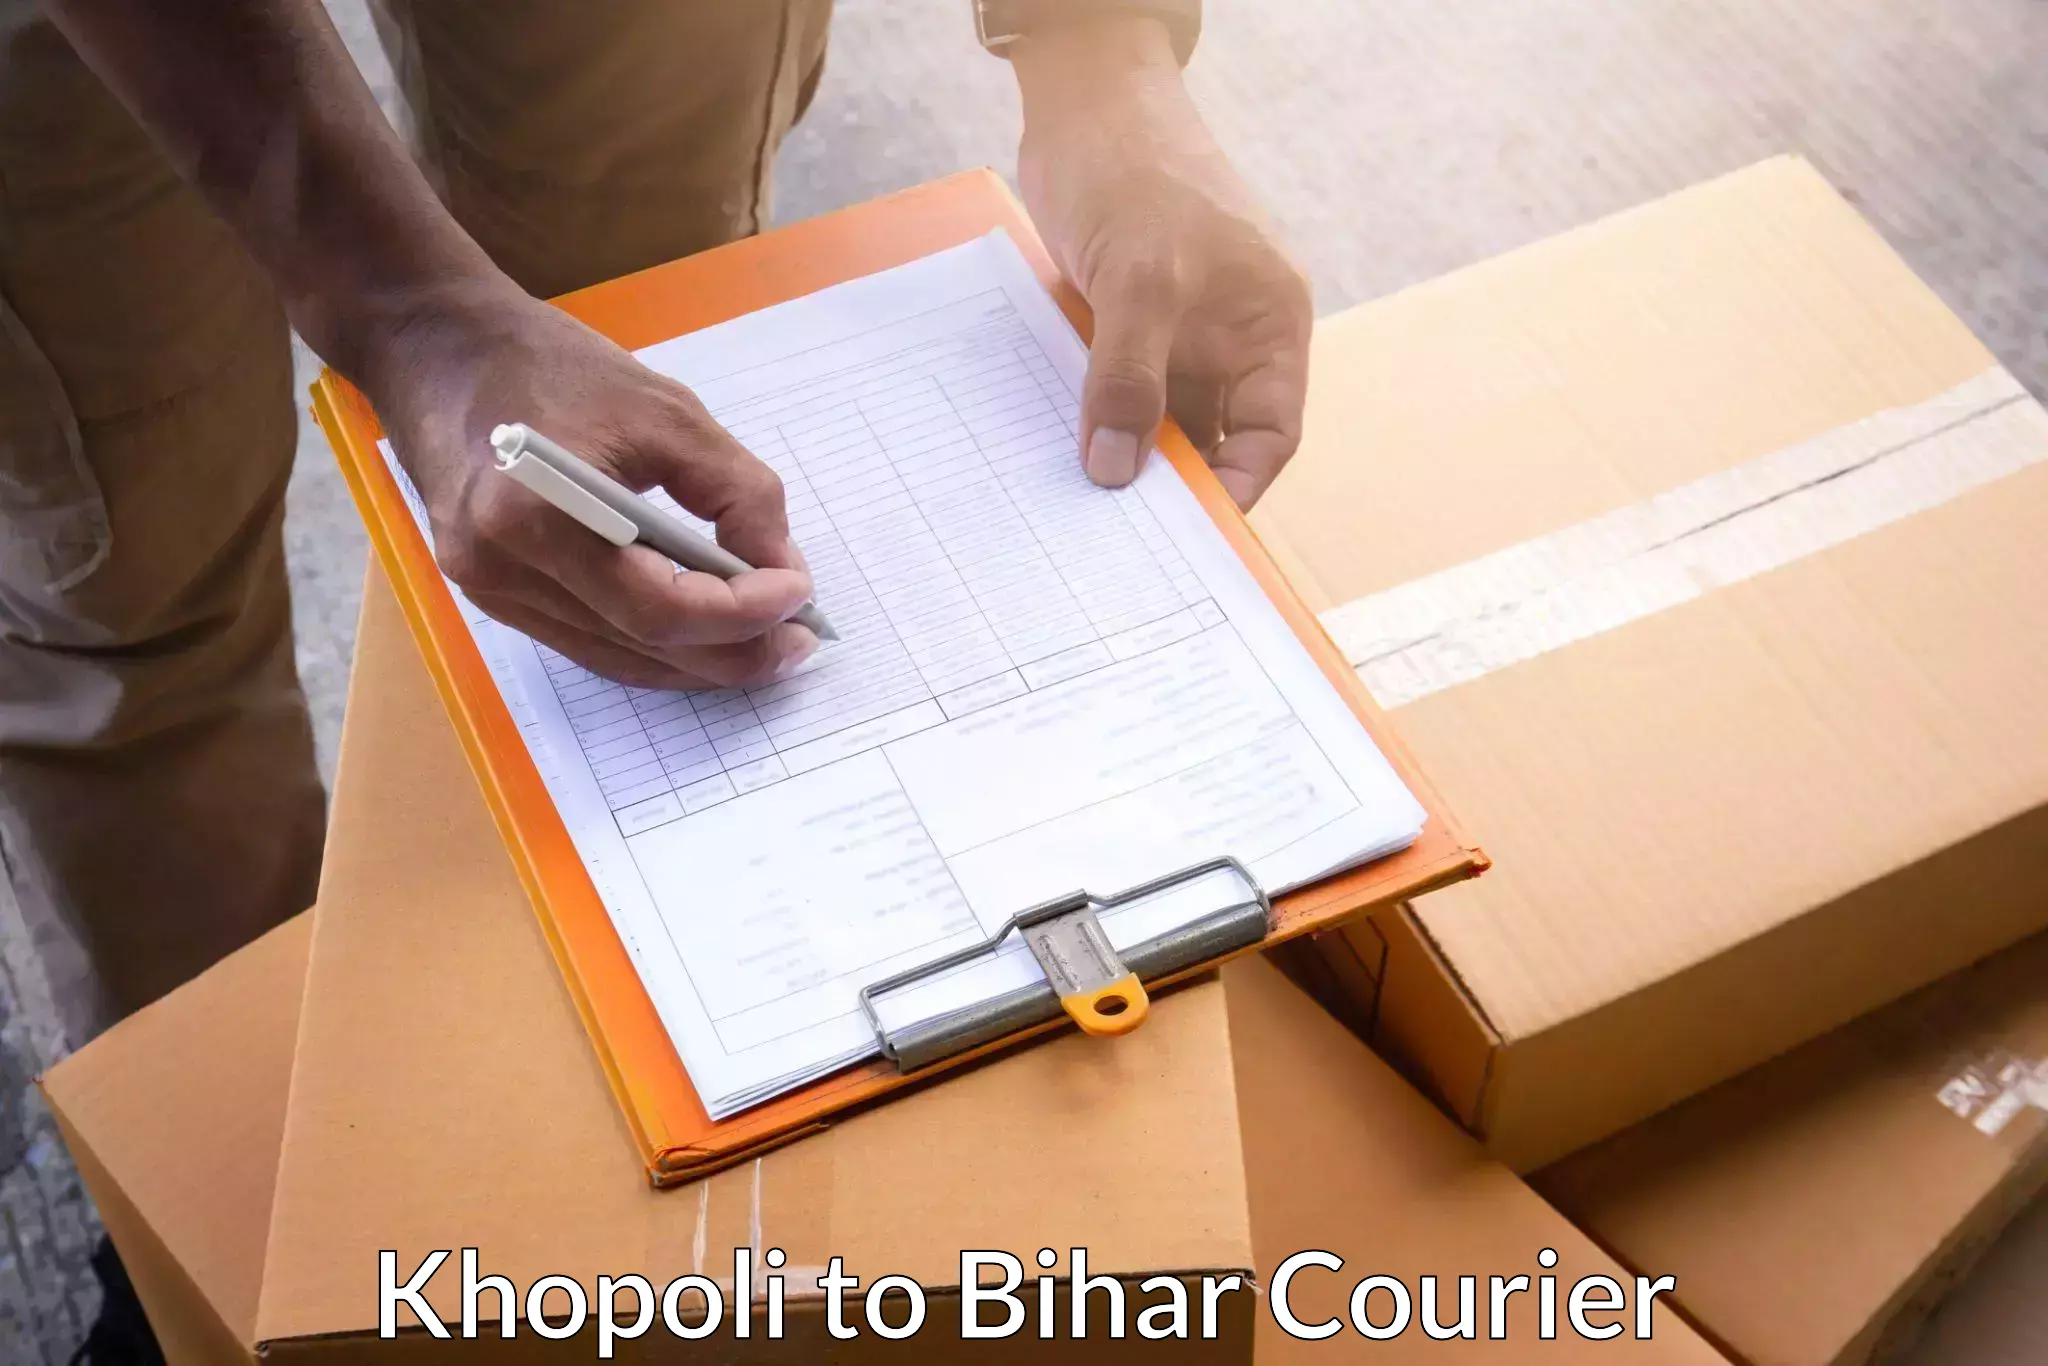 Premium courier services Khopoli to Bahadurganj